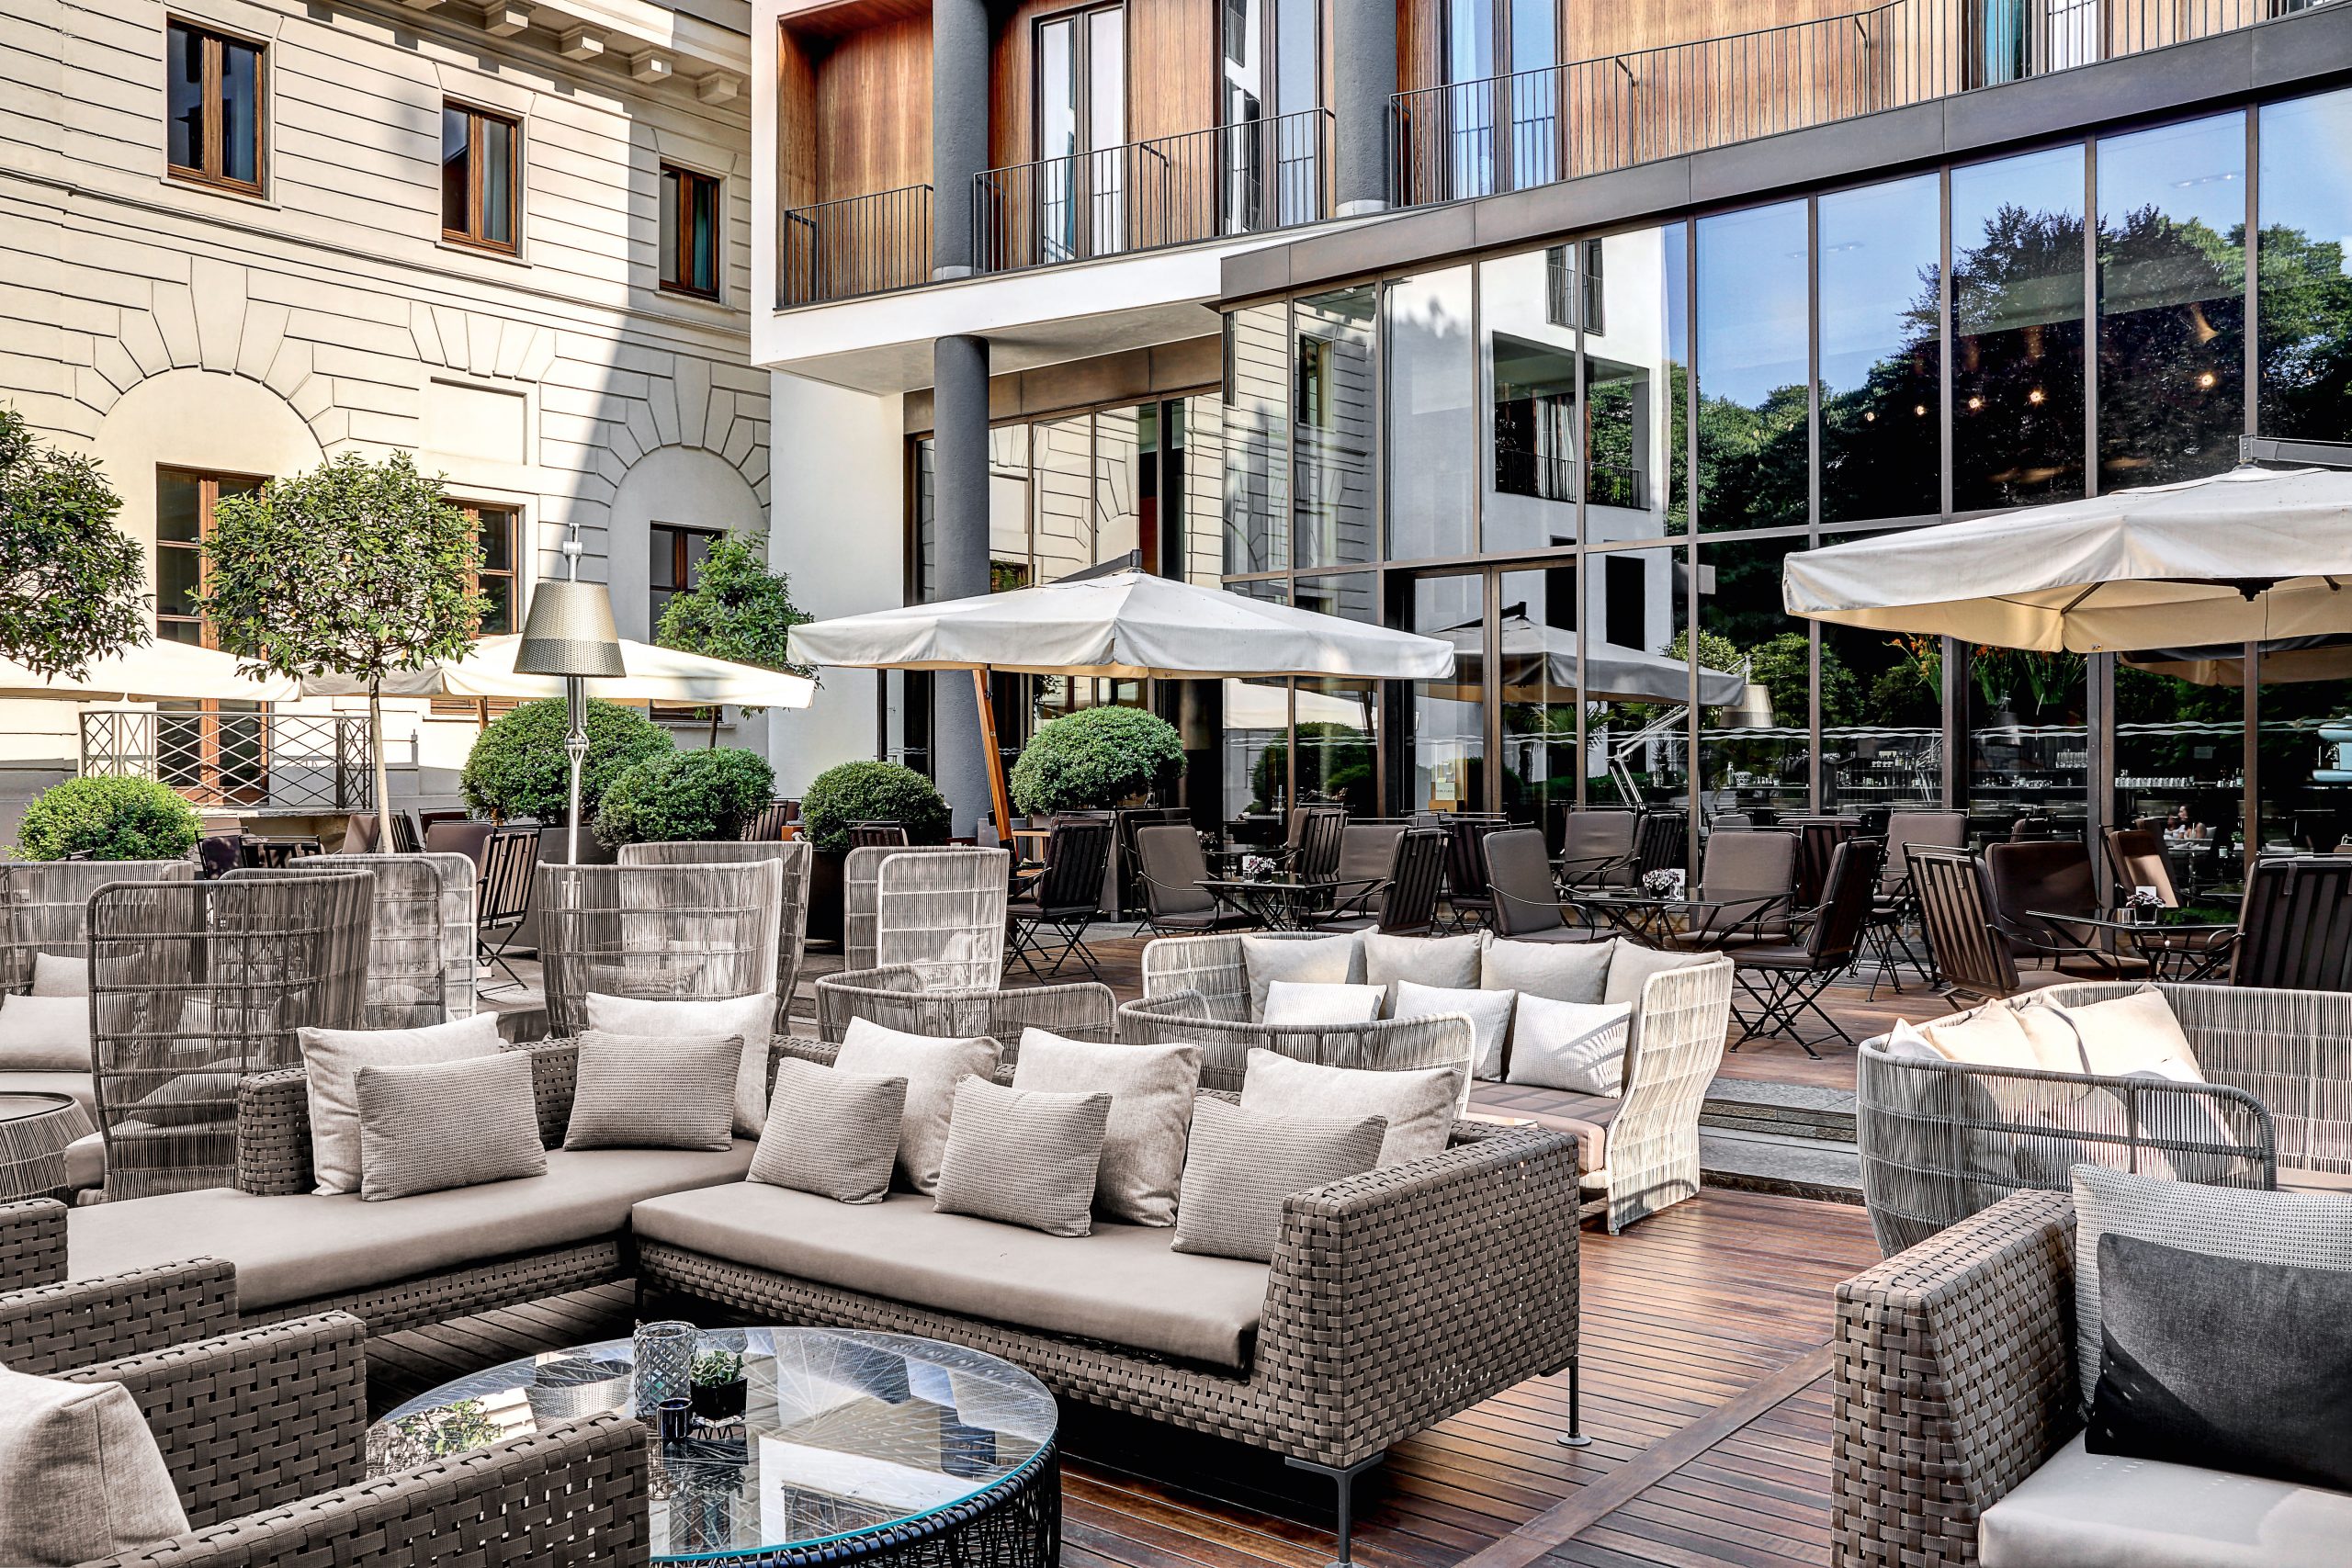 Luxury Hotels: Bvlgari Hotel Milano By Antonio Citterio Viel